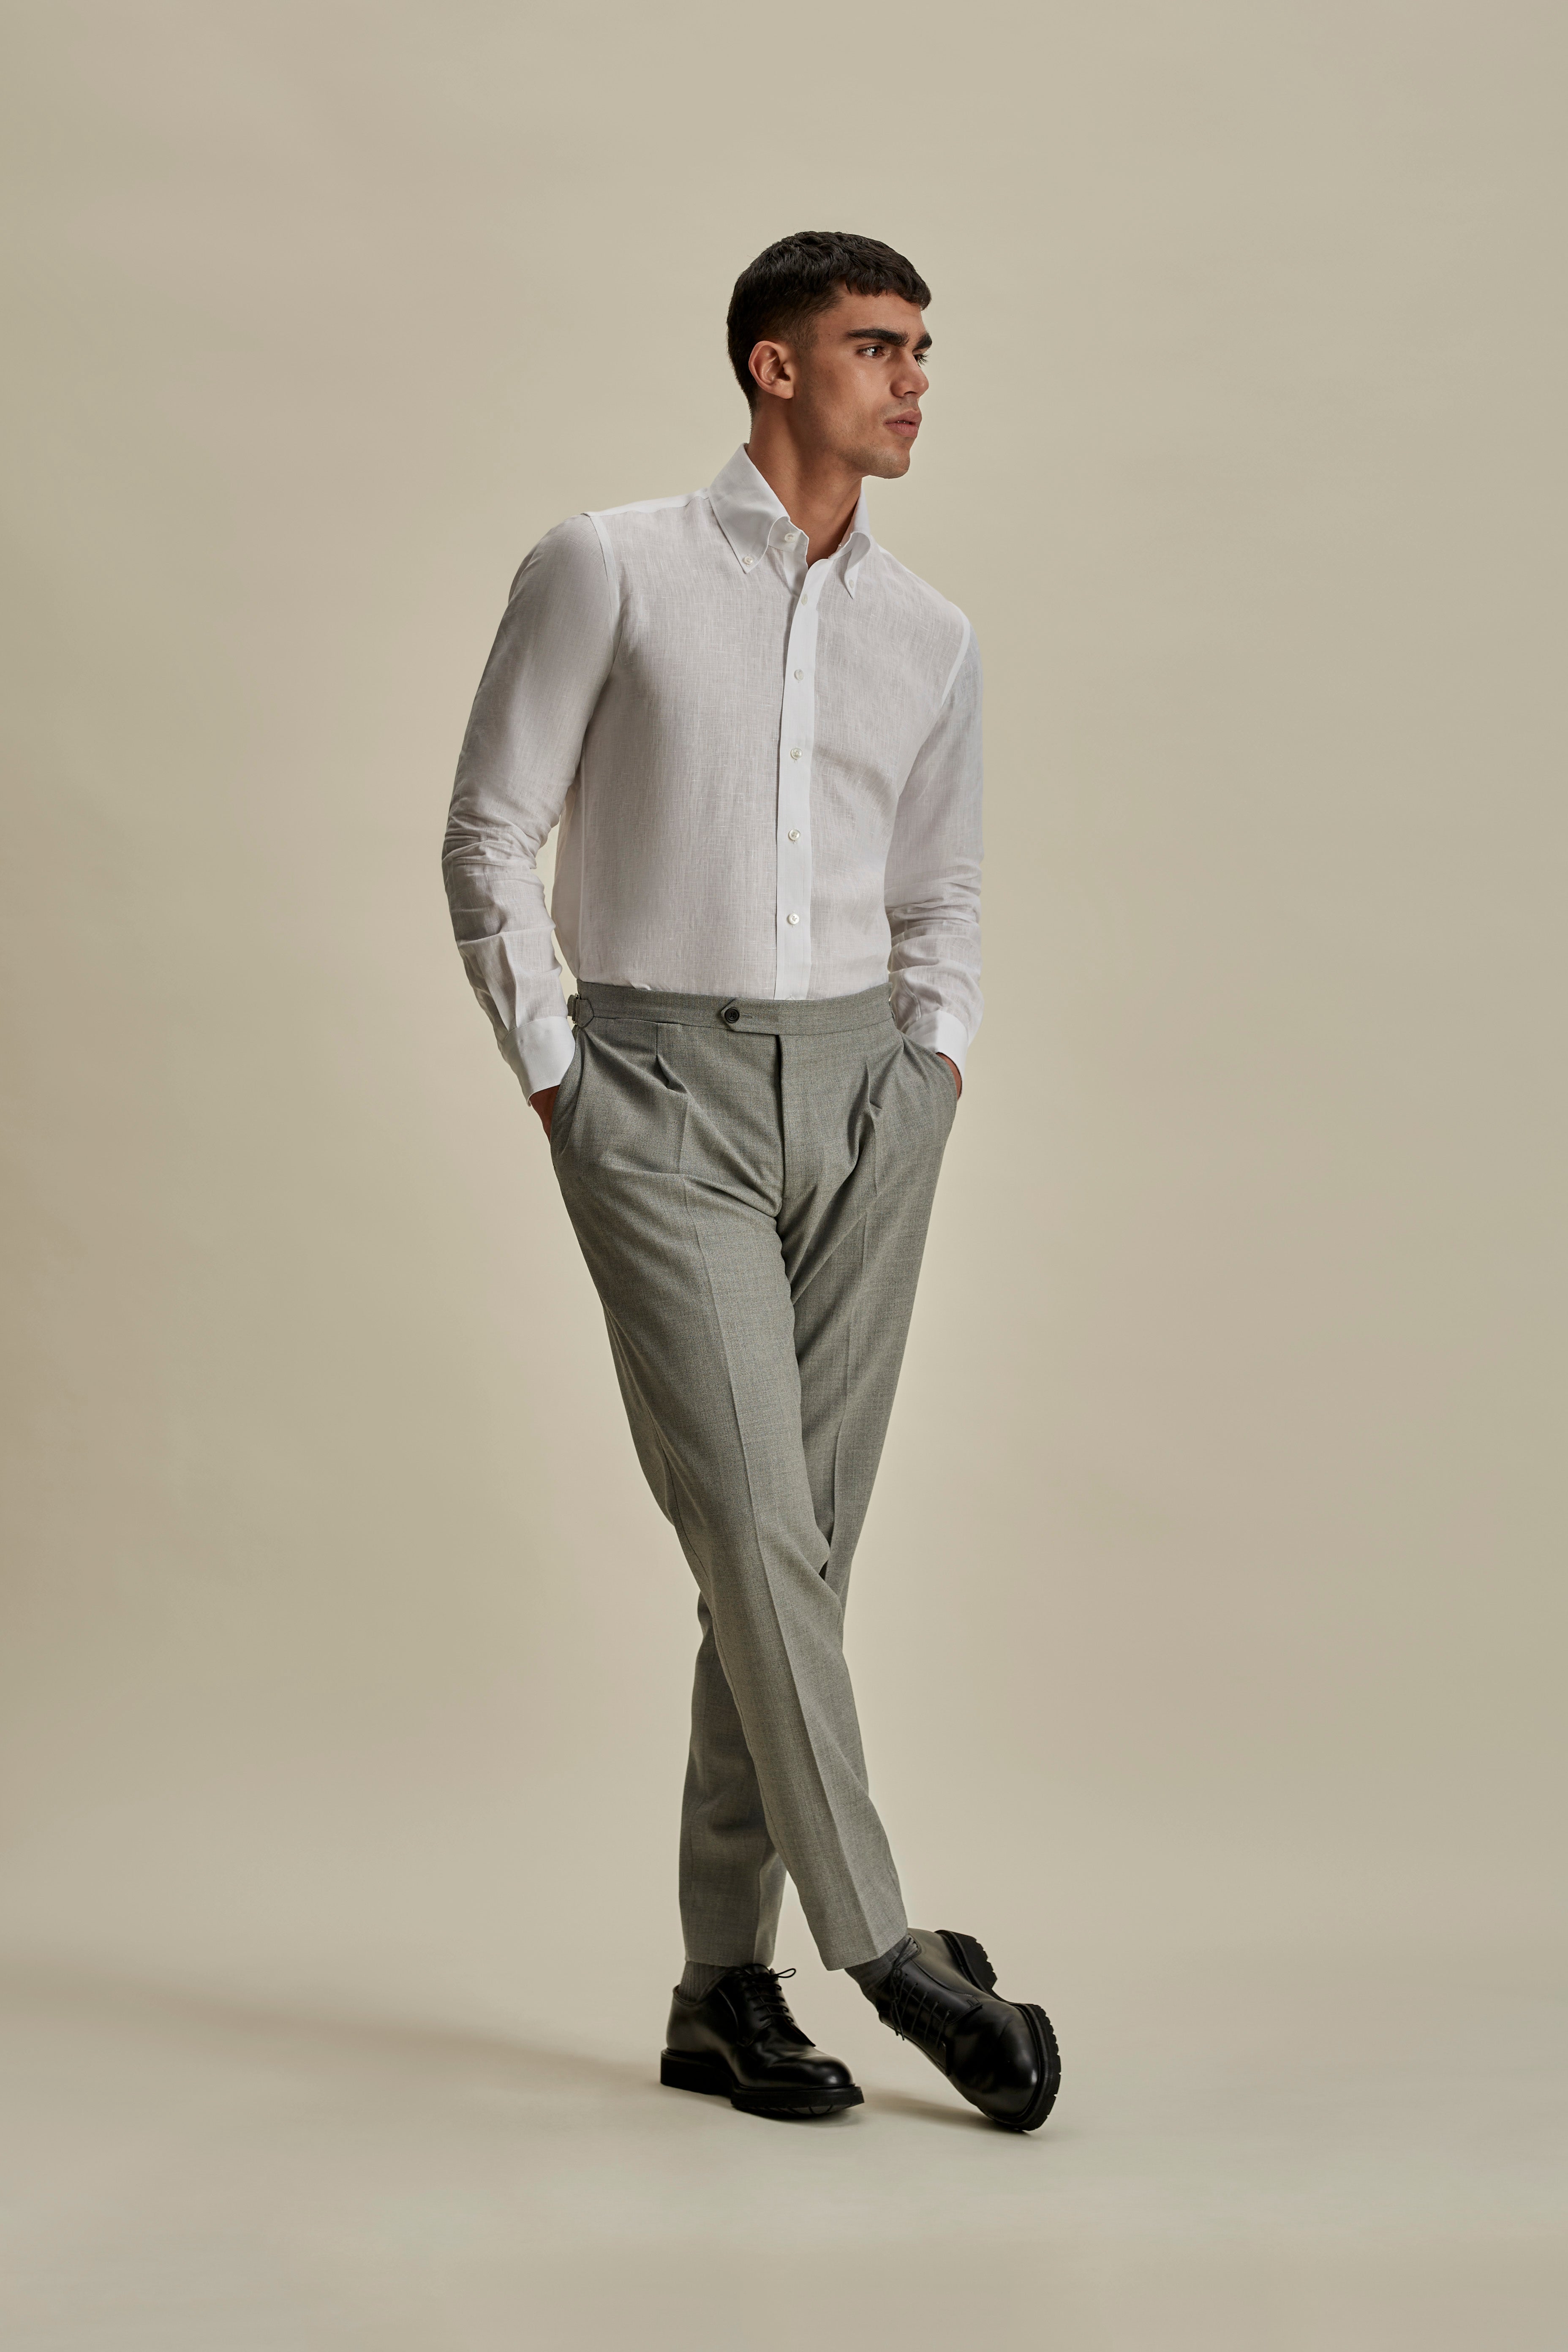 Linen Button Down Collar Shirt White Full Length Model Image